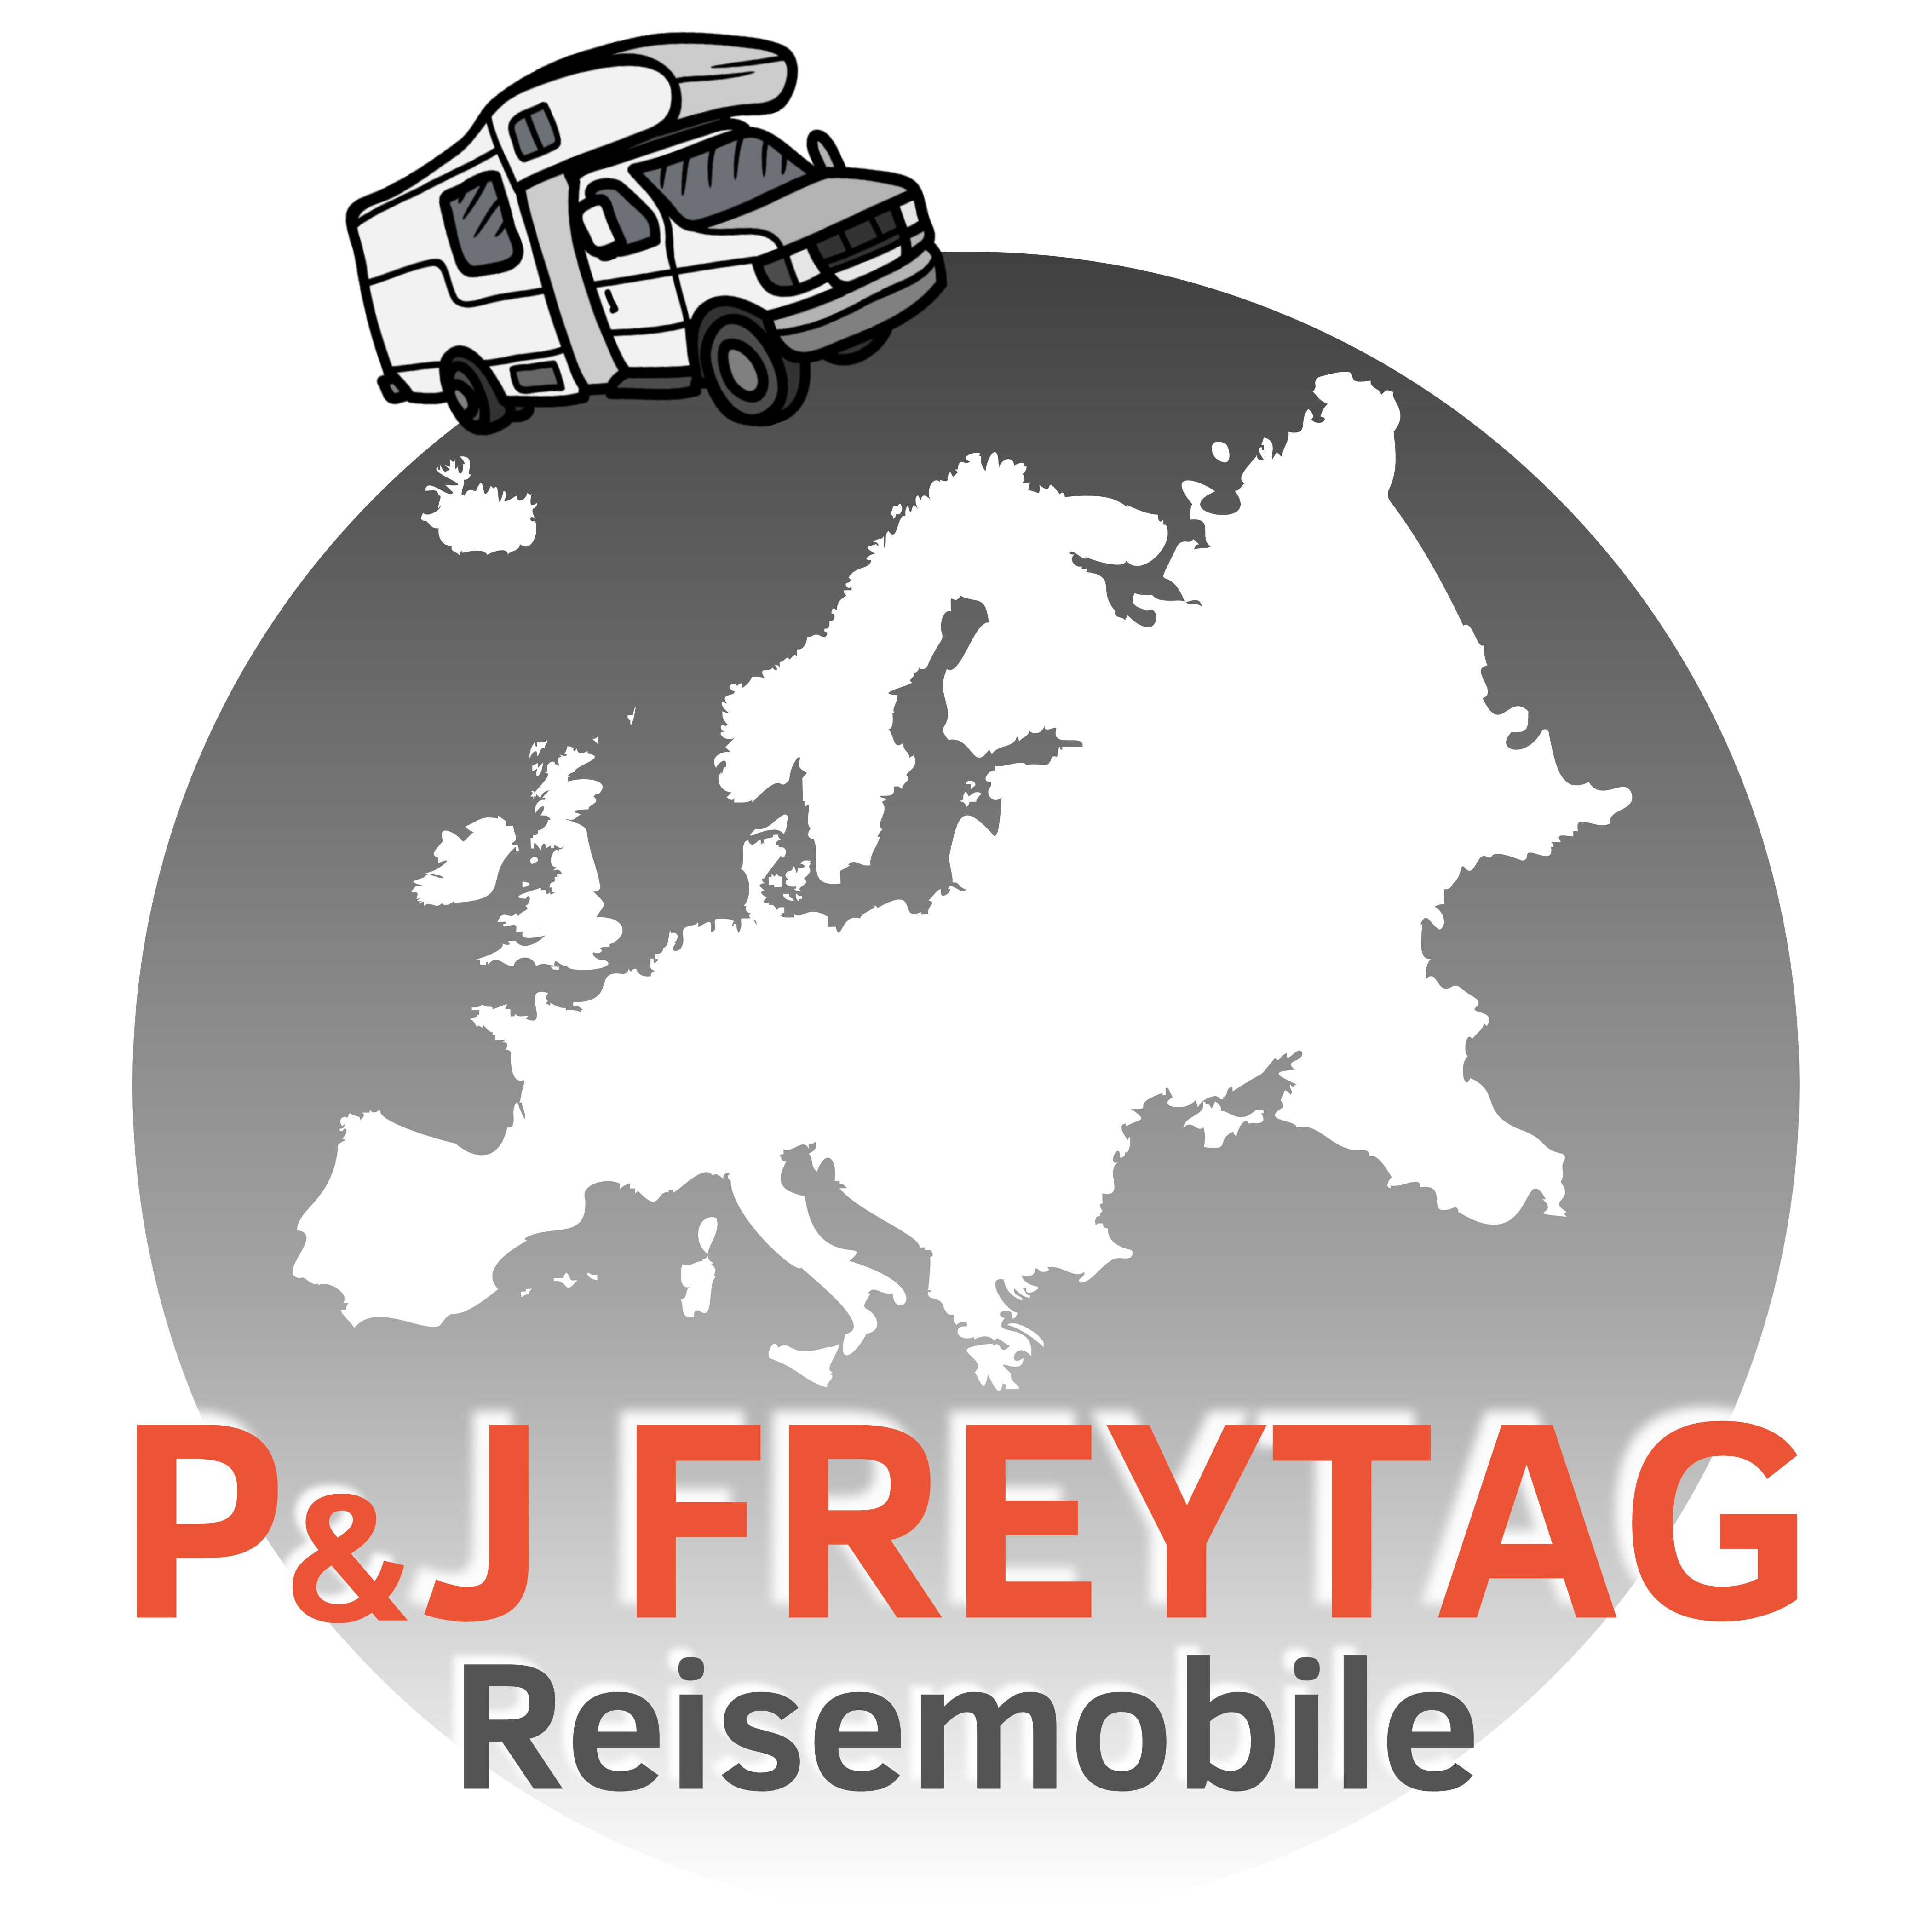 Reisemobile Freytag in Magdeburg